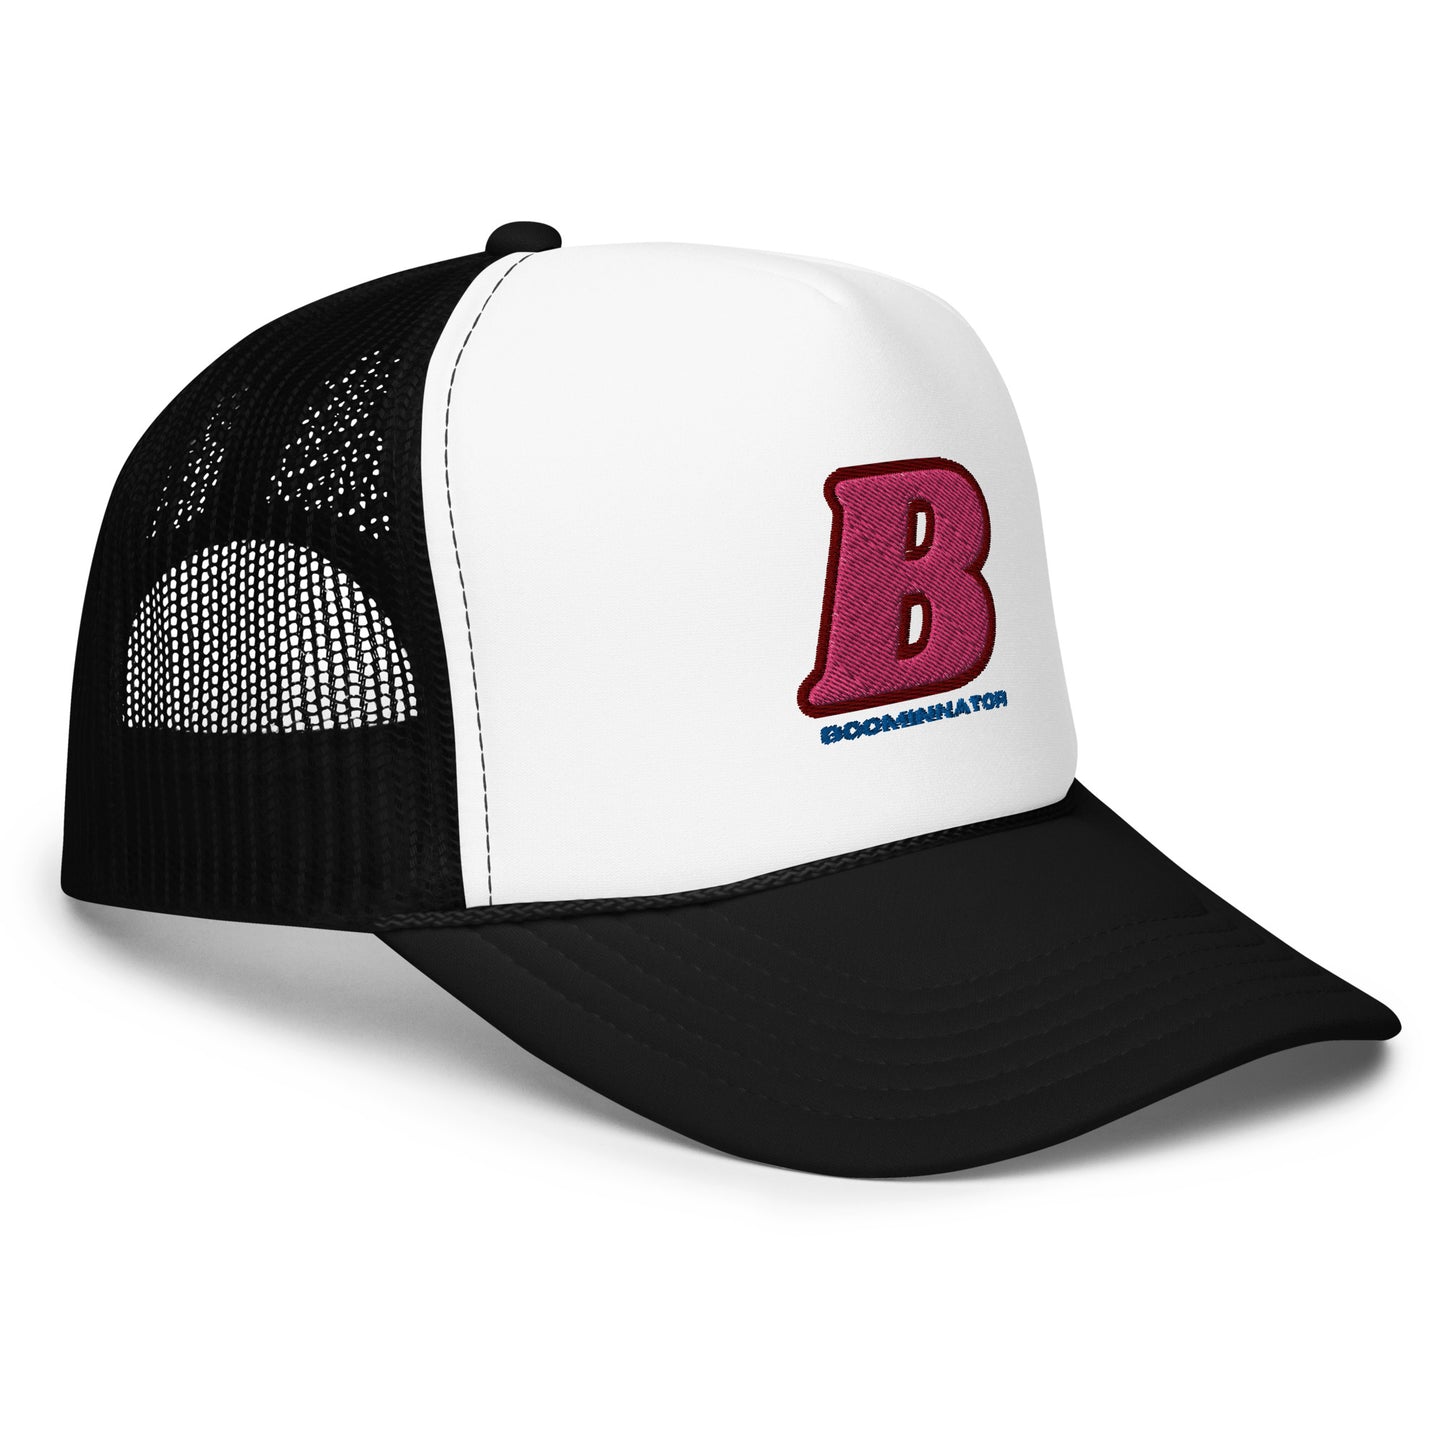 Boominnator B Foam trucker hat